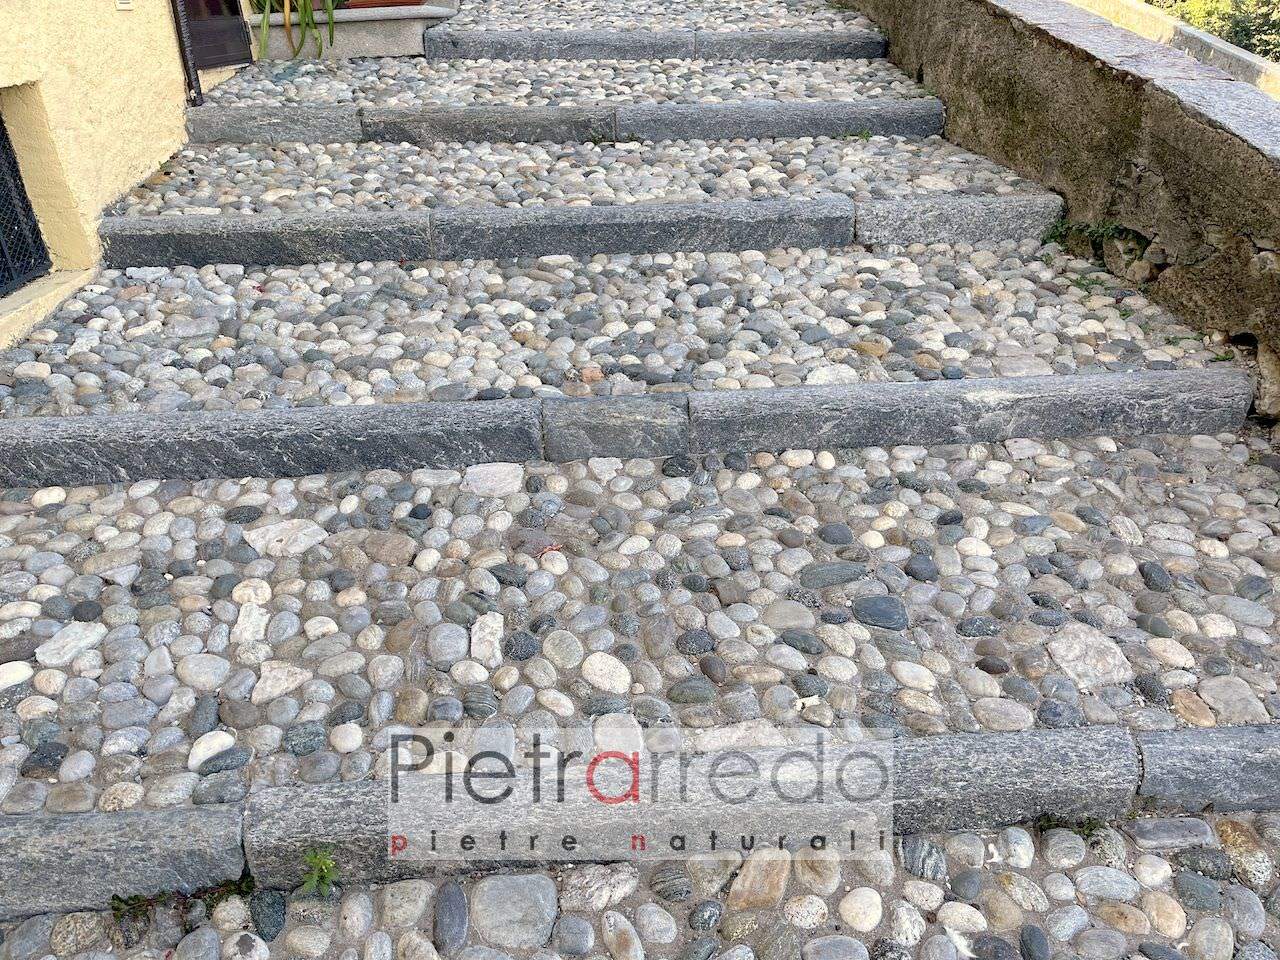 pavimento storico esterno con ciottolo fiume sassolini prezzo pietraredo milano